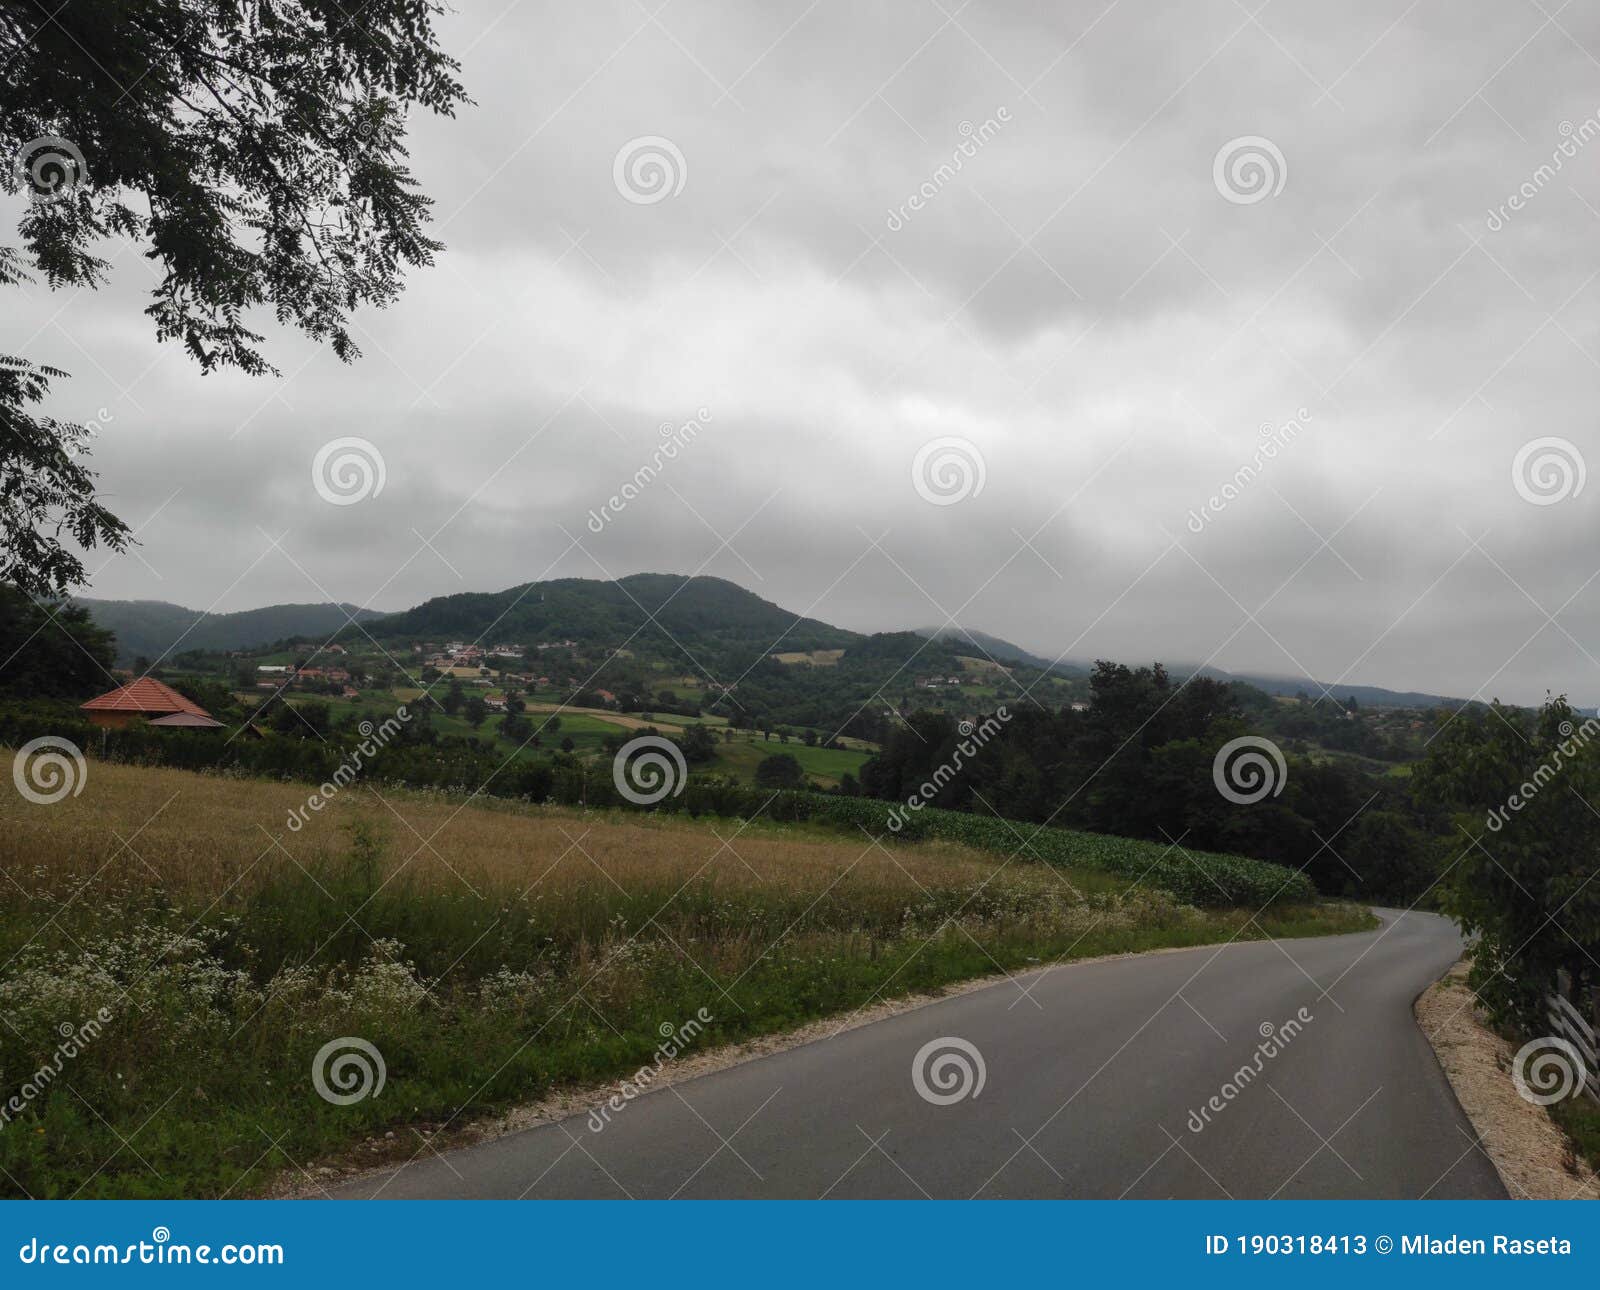 serbia green hills and slopes dragaÃÂevo region